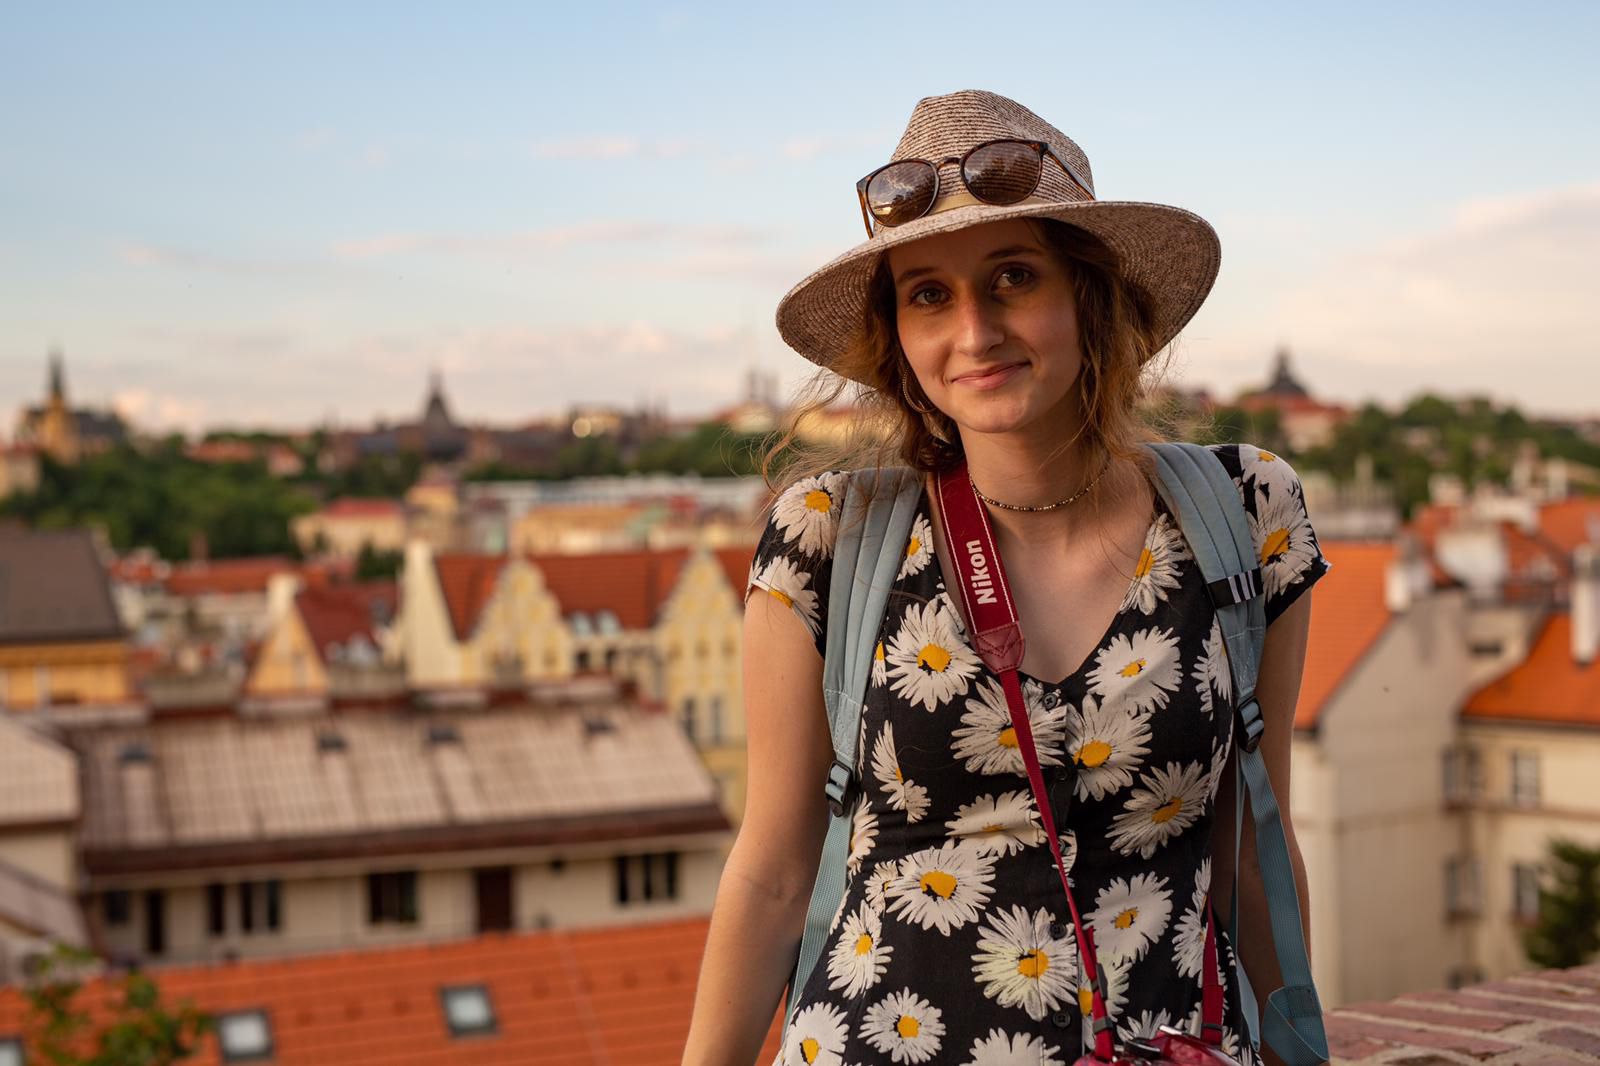 Rachel in flowered dress in Czech Republic